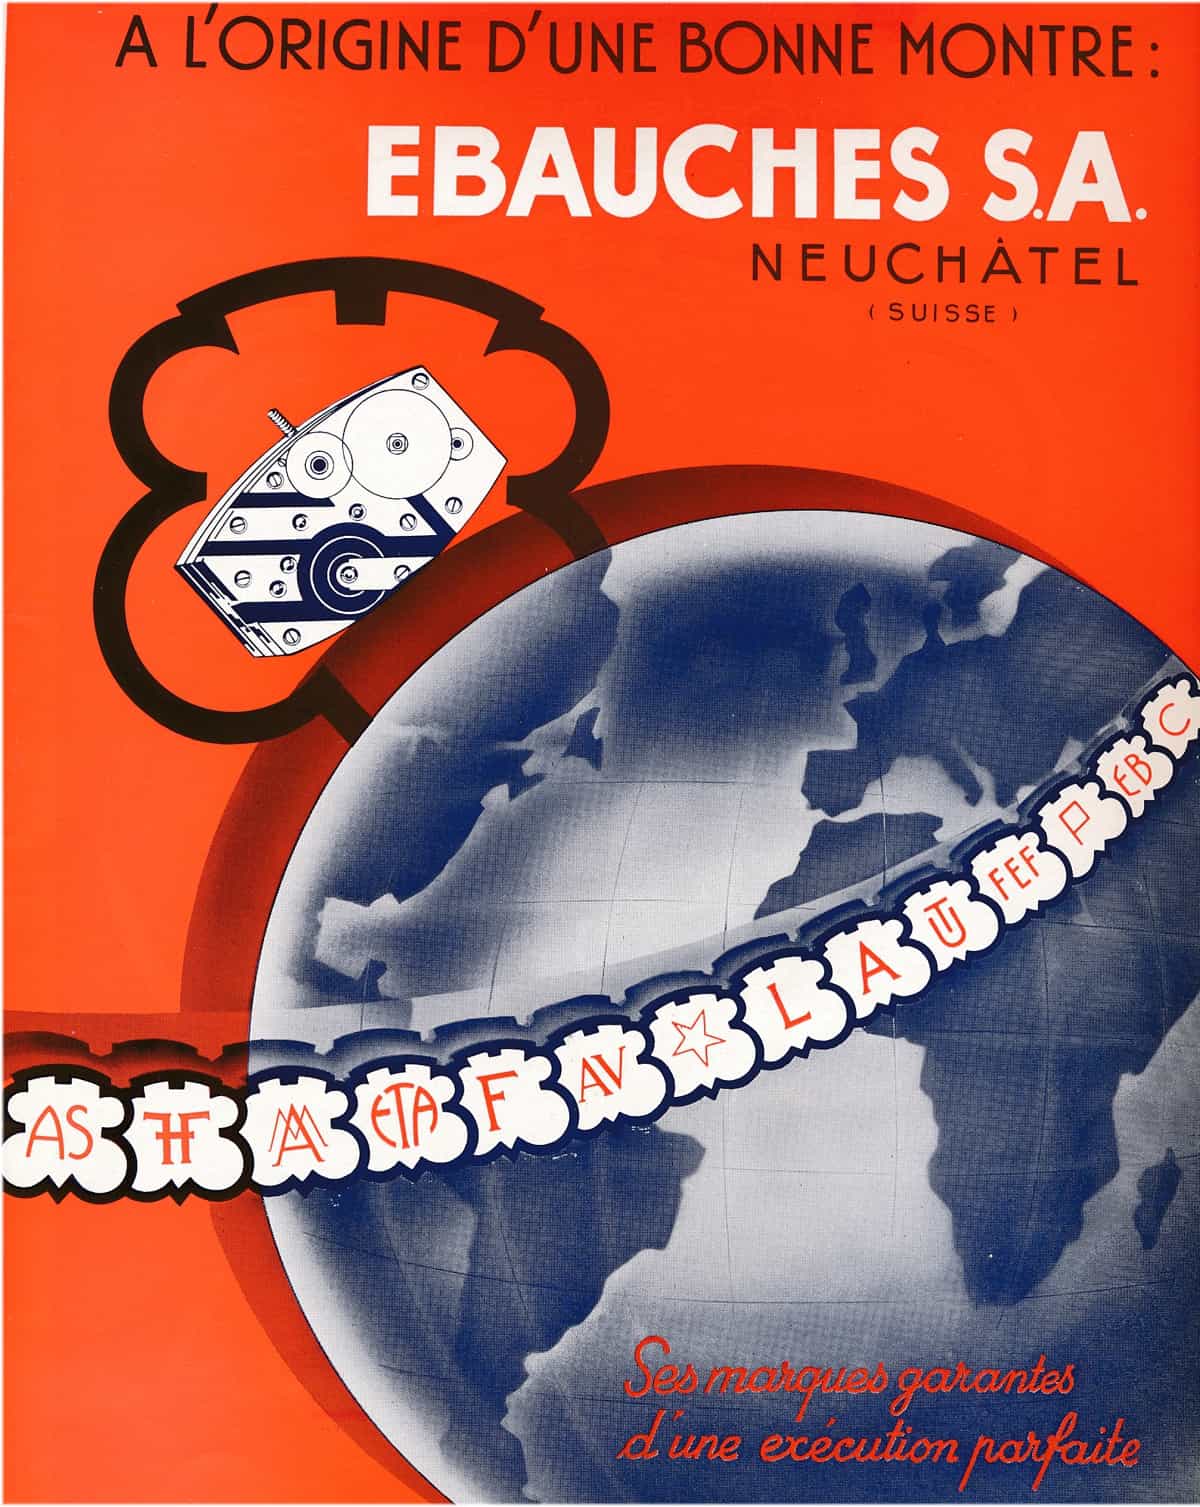 Anzeige der Ebauches SA 1939